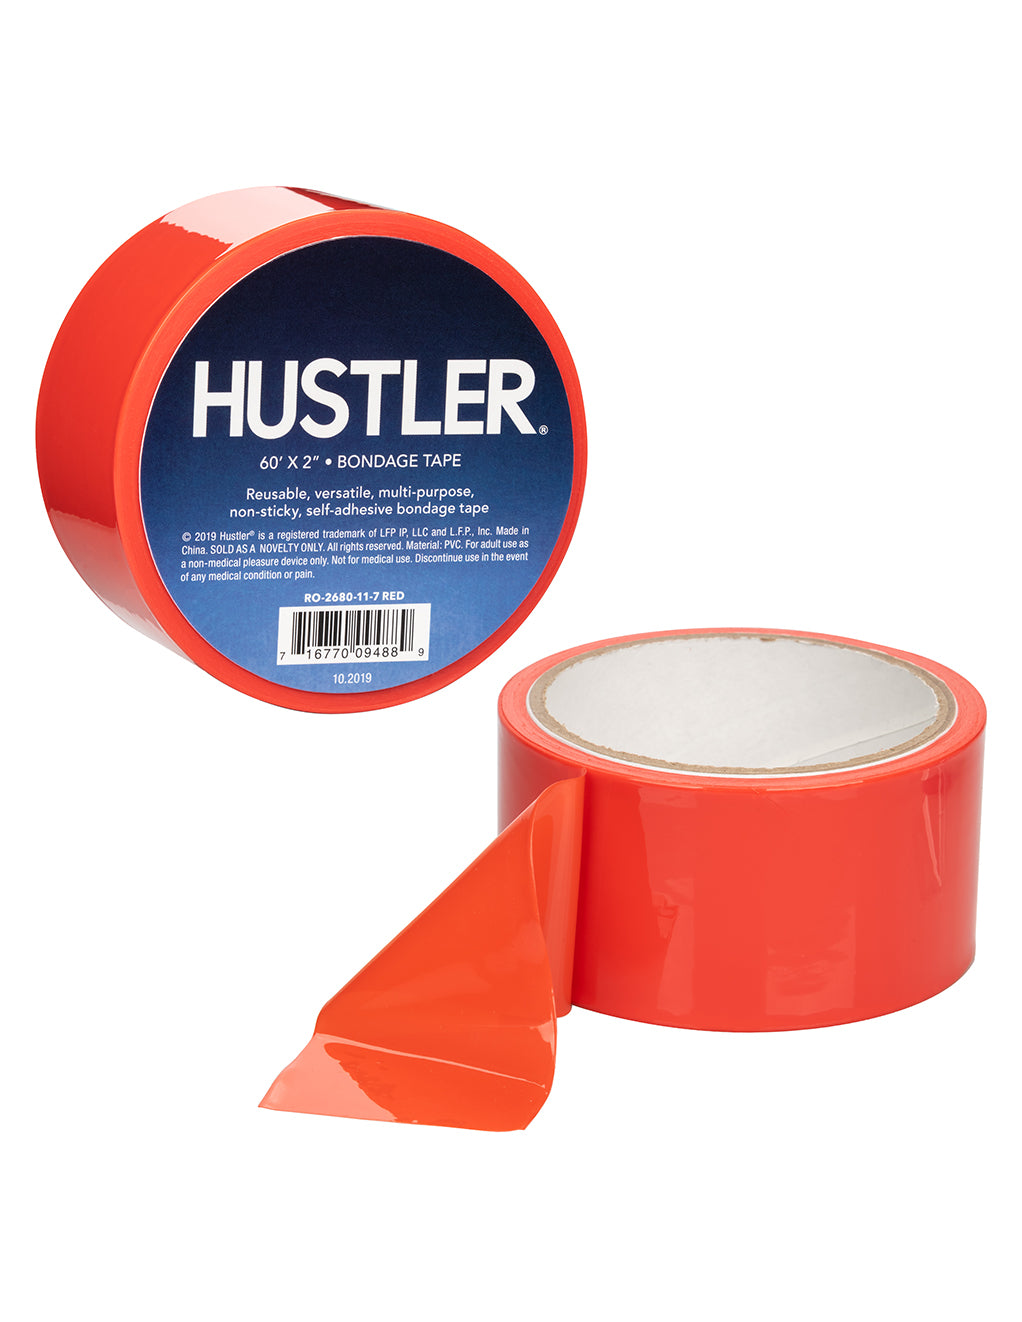 HUSTLER Bondage Tape- Red- Logo- Details